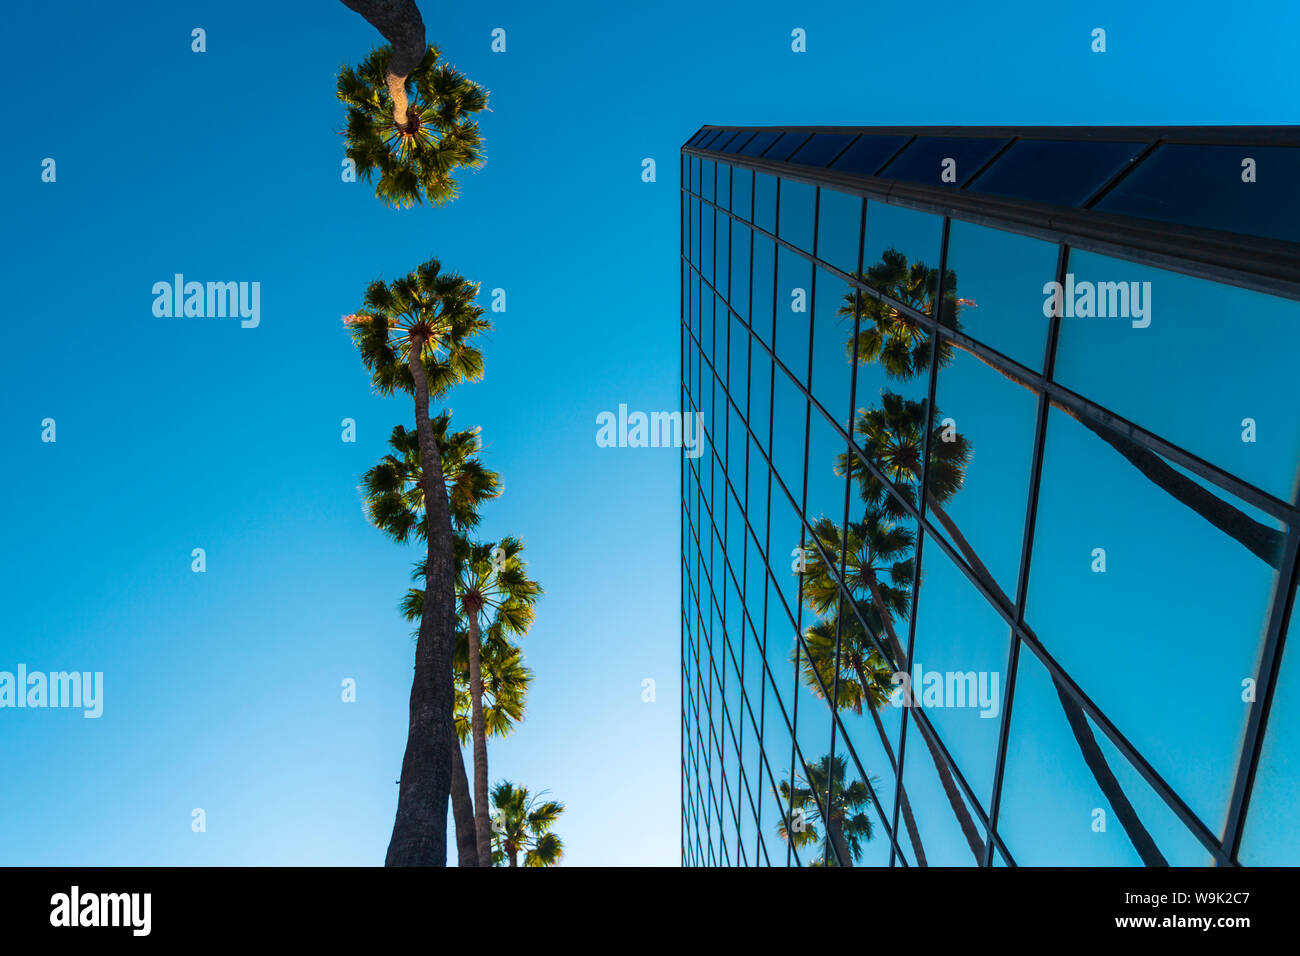 Palmen und Gebäude aus Glas, die Froschperspektive, Hollywood, Los Angeles, Kalifornien, Vereinigte Staaten von Amerika, Nordamerika Stockfoto